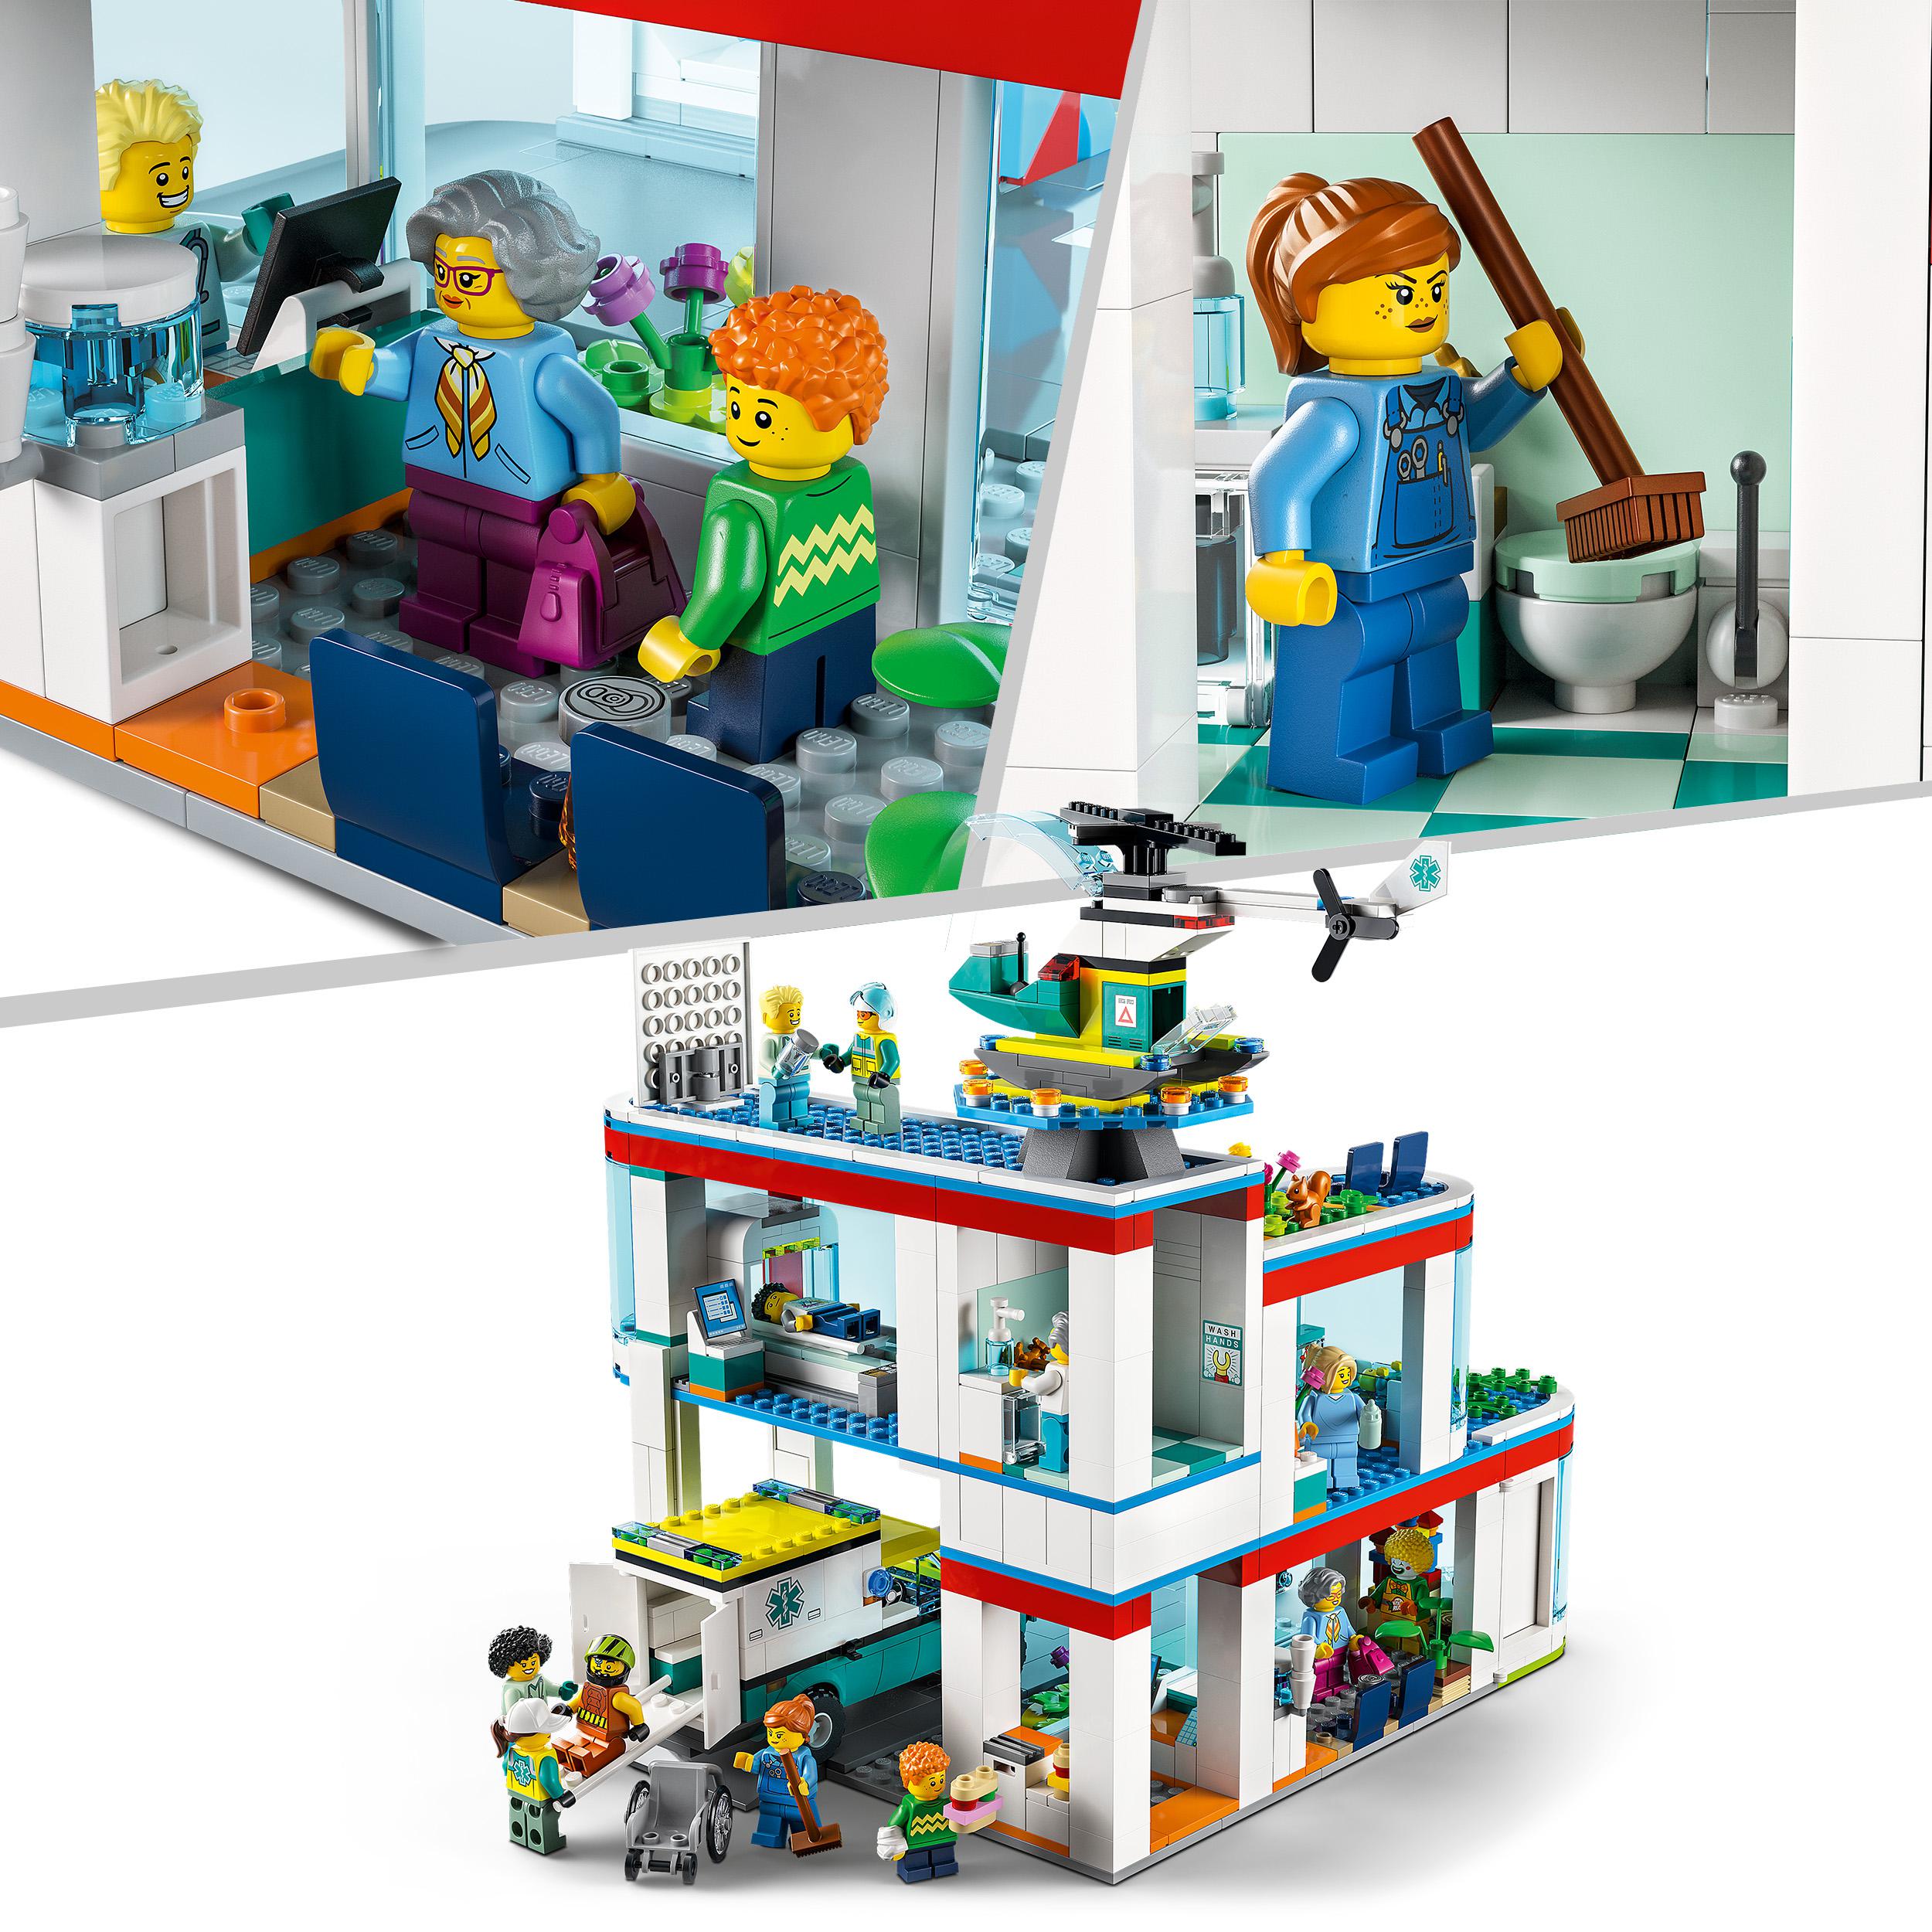 LEGO City Ospedale, Set con Autoambulanza Giocattolo ed Elicottero di Soccorso, 60330, , large